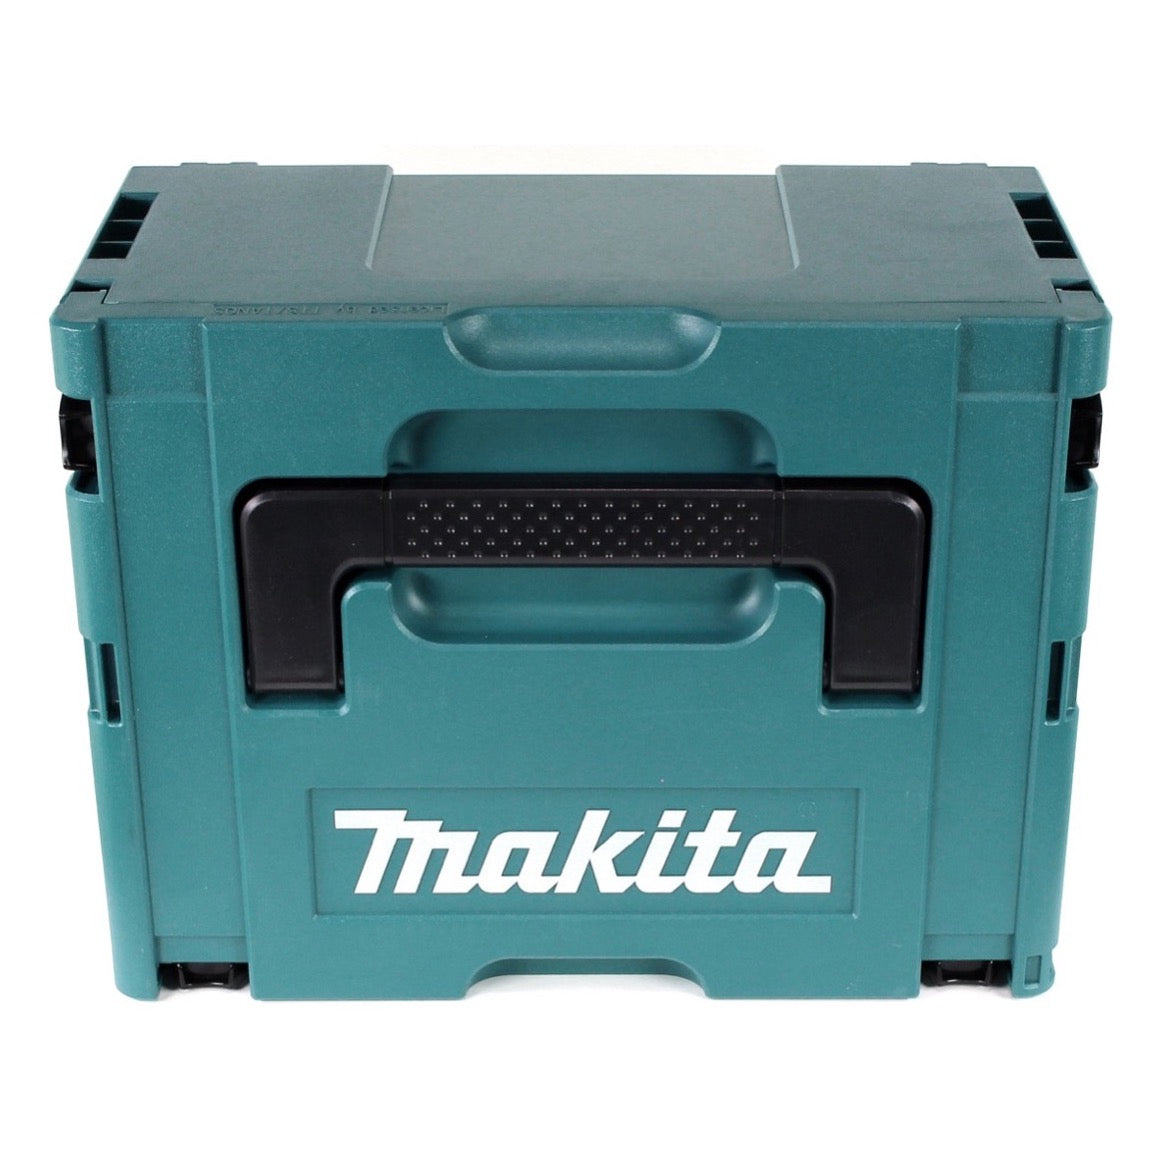 Makita DCS 553 RTJ Akku Metallhandkreissäge 18V 150 mm Brushless + 2x Akku 5,0Ah + Ladegerät + Makpac - Toolbrothers